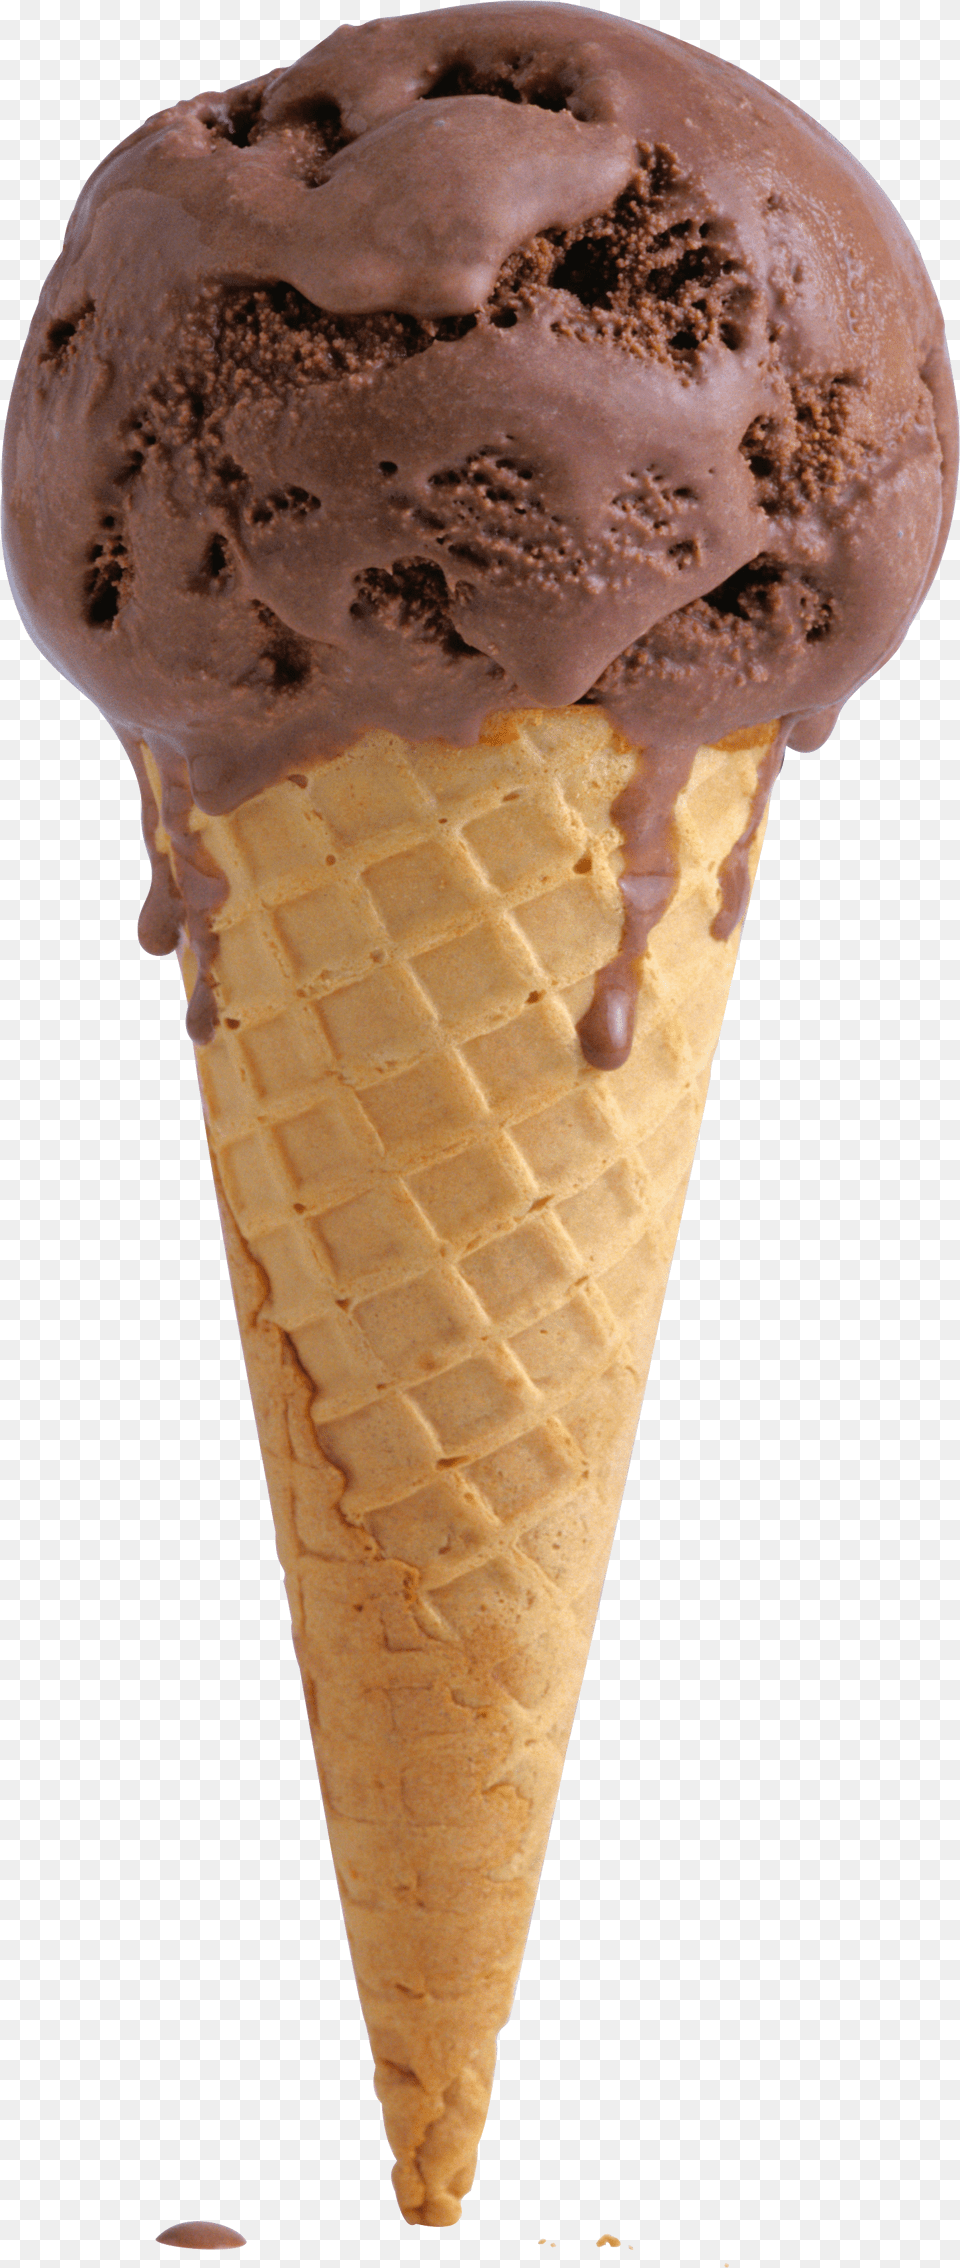 Ice Cream Ice Cream Cone, Dessert, Food, Ice Cream, Soft Serve Ice Cream Png Image